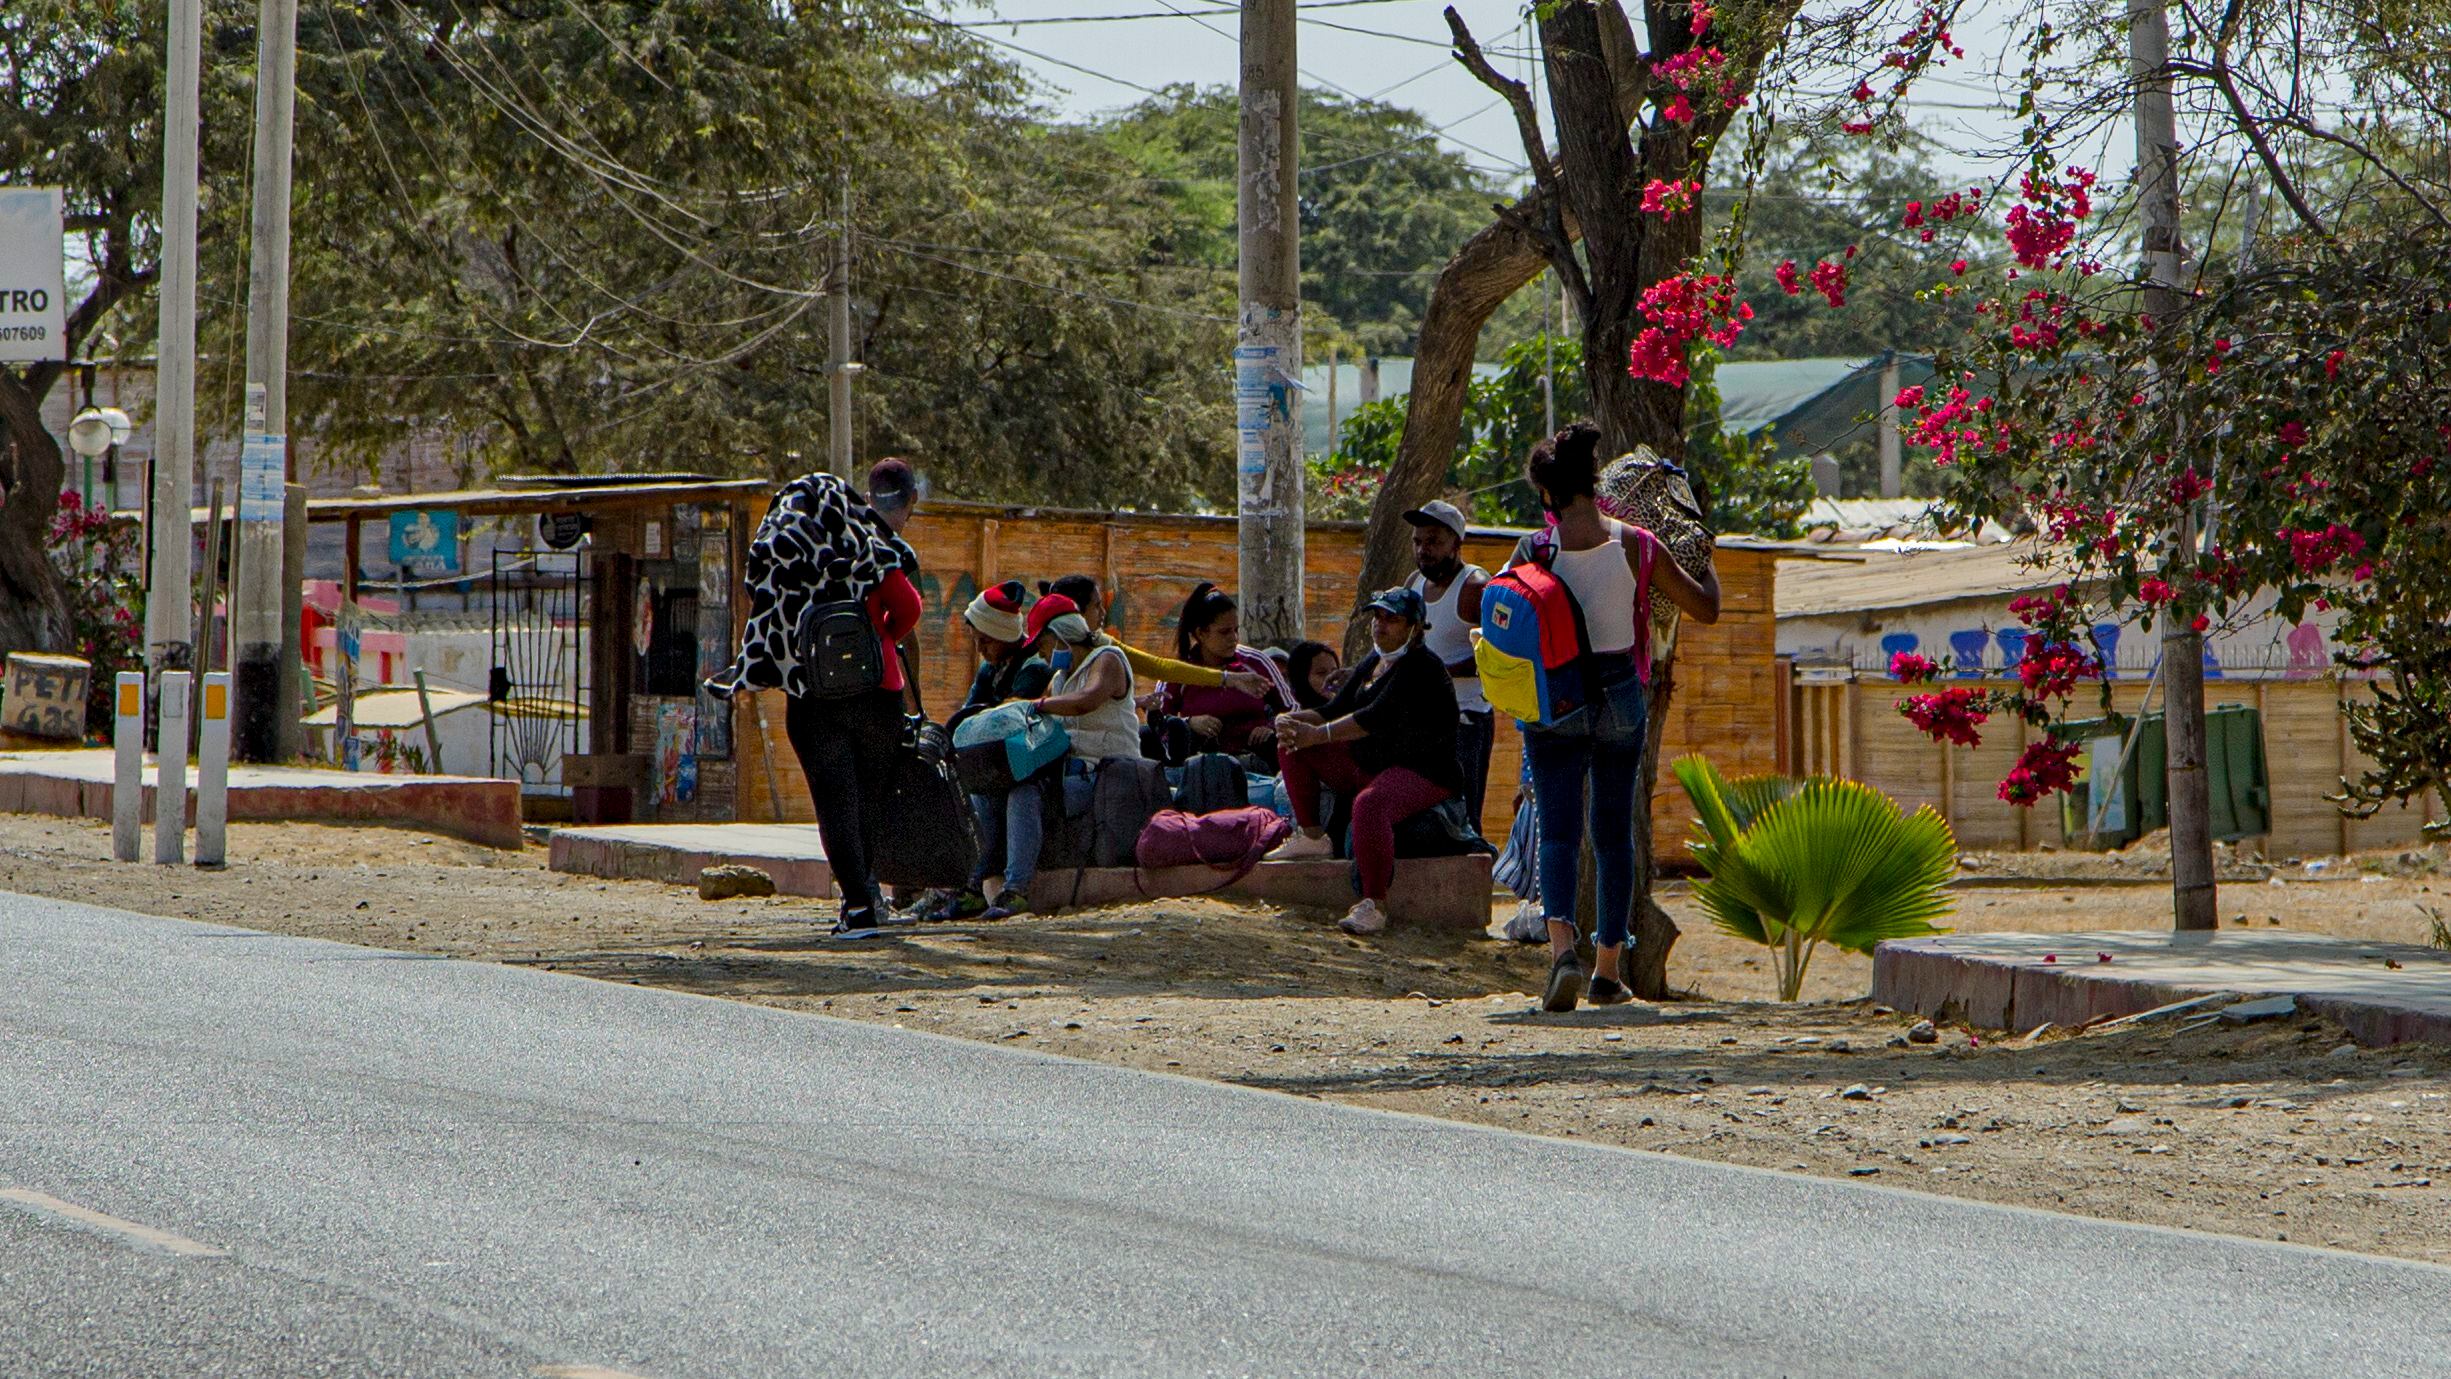 Los migrantes venezolanos requieren ayuda humanitaria. La mayoría camina por horas para encontrar refugio. (Foto: Carls Mayo)